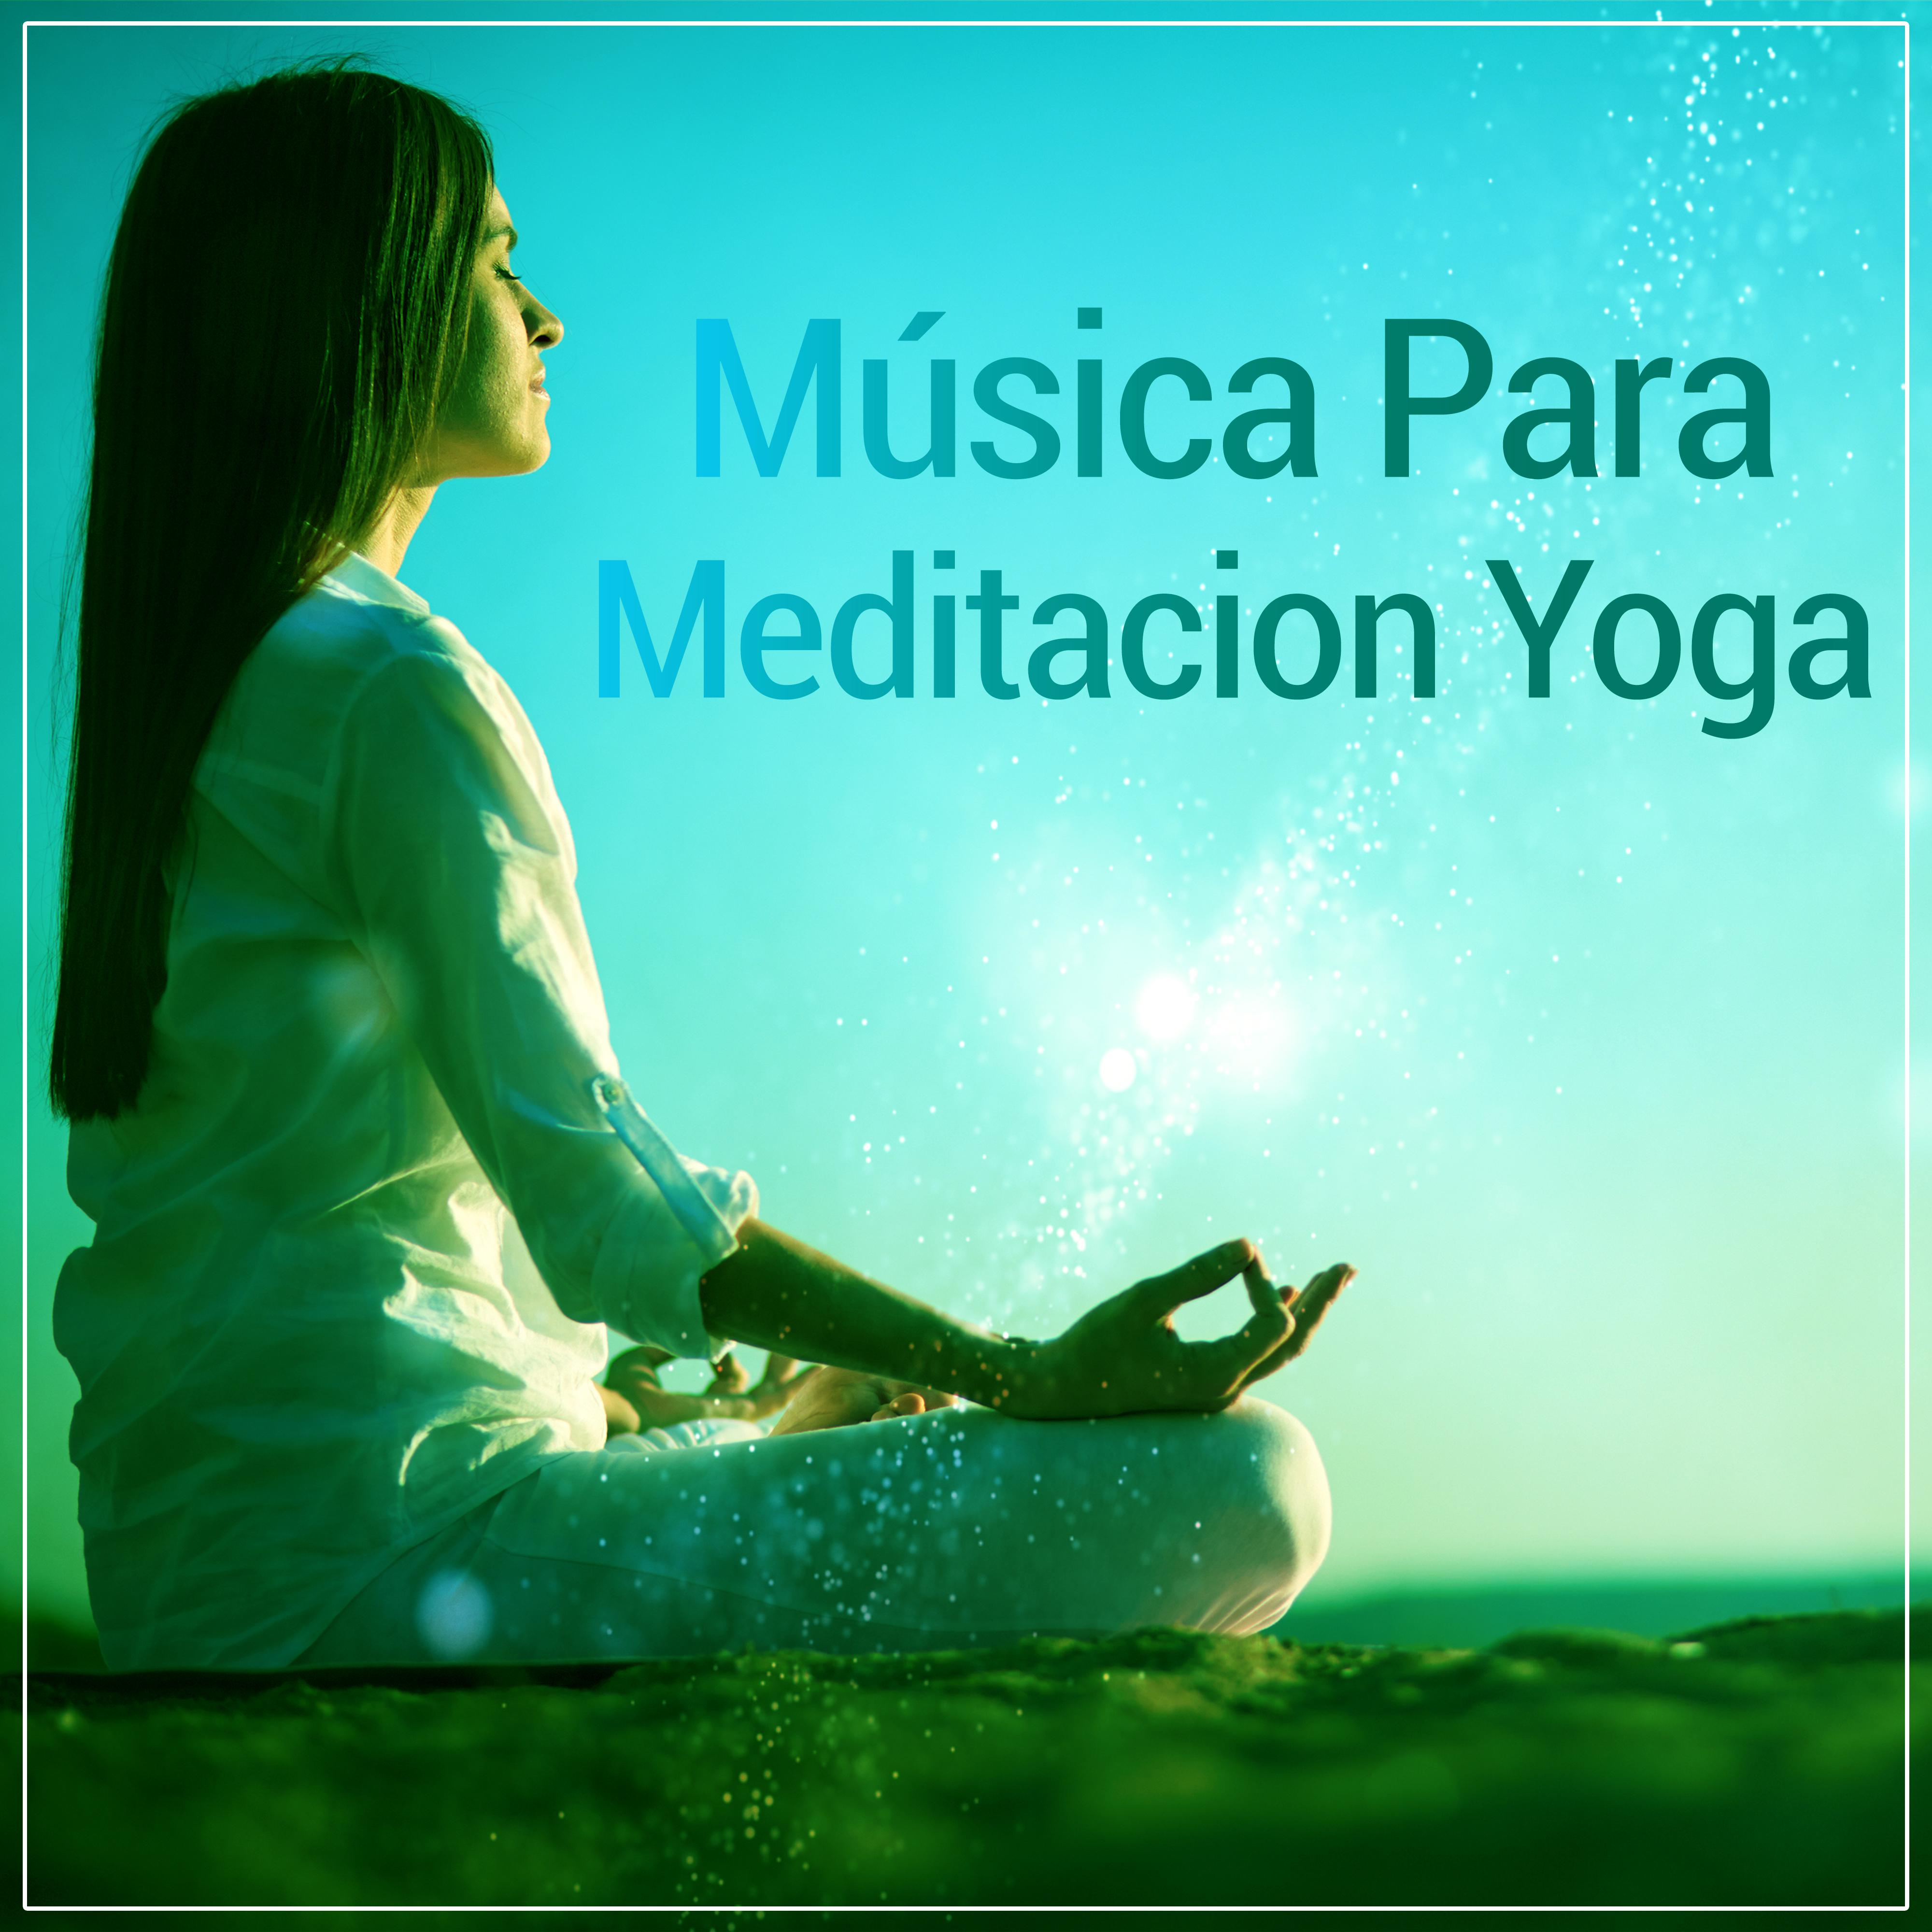 Música Para Meditacion Yoga – Música Relajante Para la Meditación, el Yoga, el Sueño, la Relajación, la Nueva Era